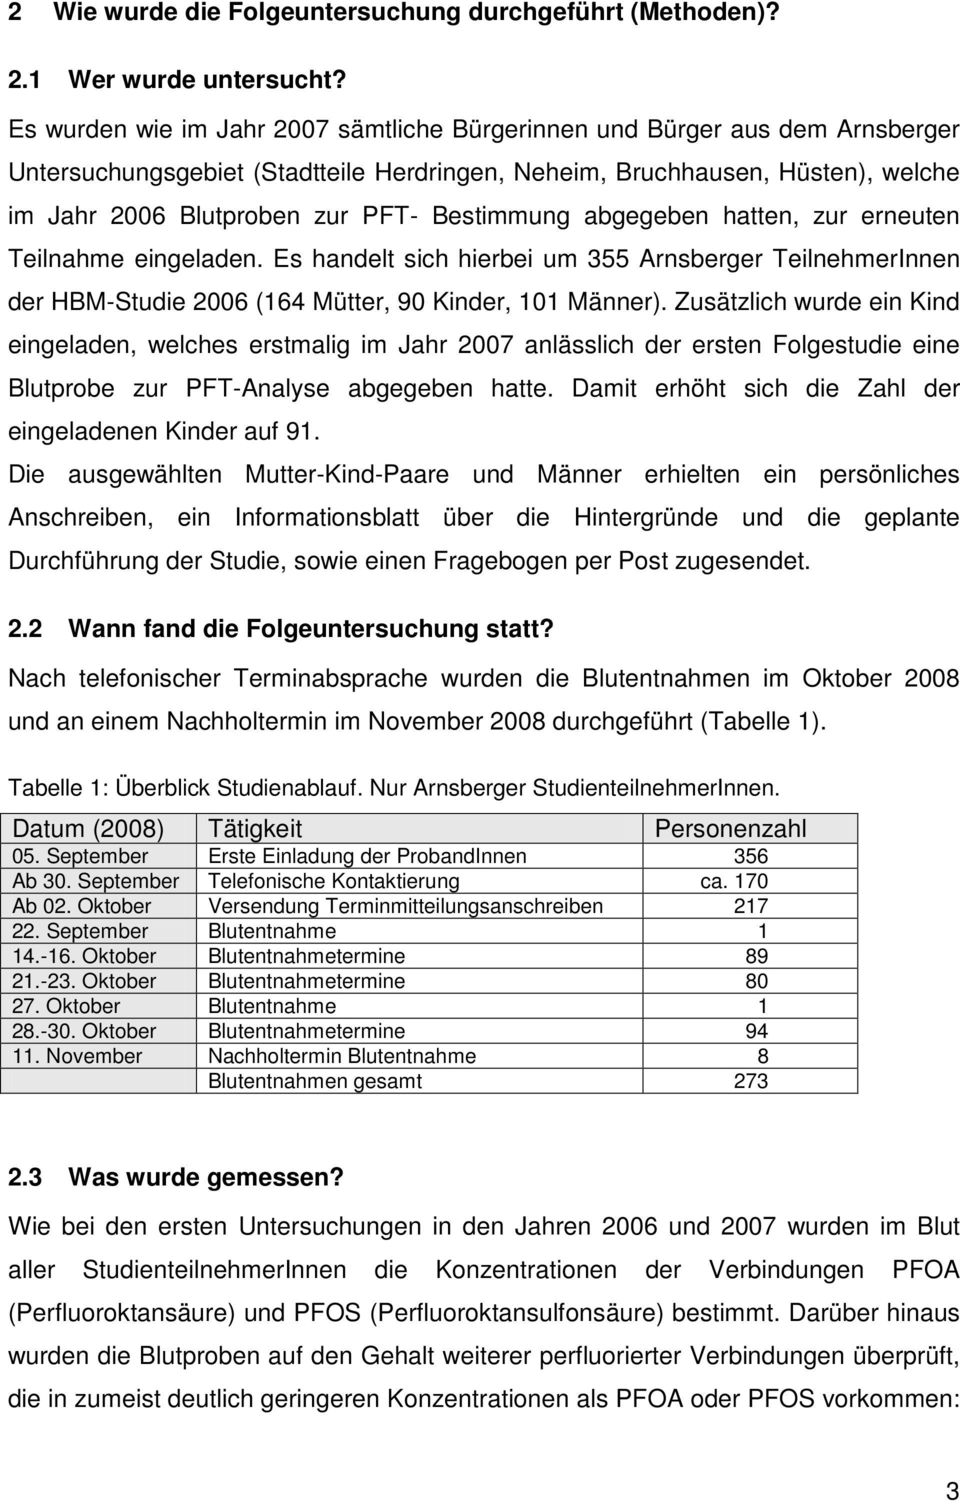 Bestimmung abgegeben hatten, zur erneuten Teilnahme eingeladen. Es handelt sich hierbei um 355 Arnsberger TeilnehmerInnen der HBM-Studie 2006 (164 Mütter, 90 Kinder, 101 Männer).